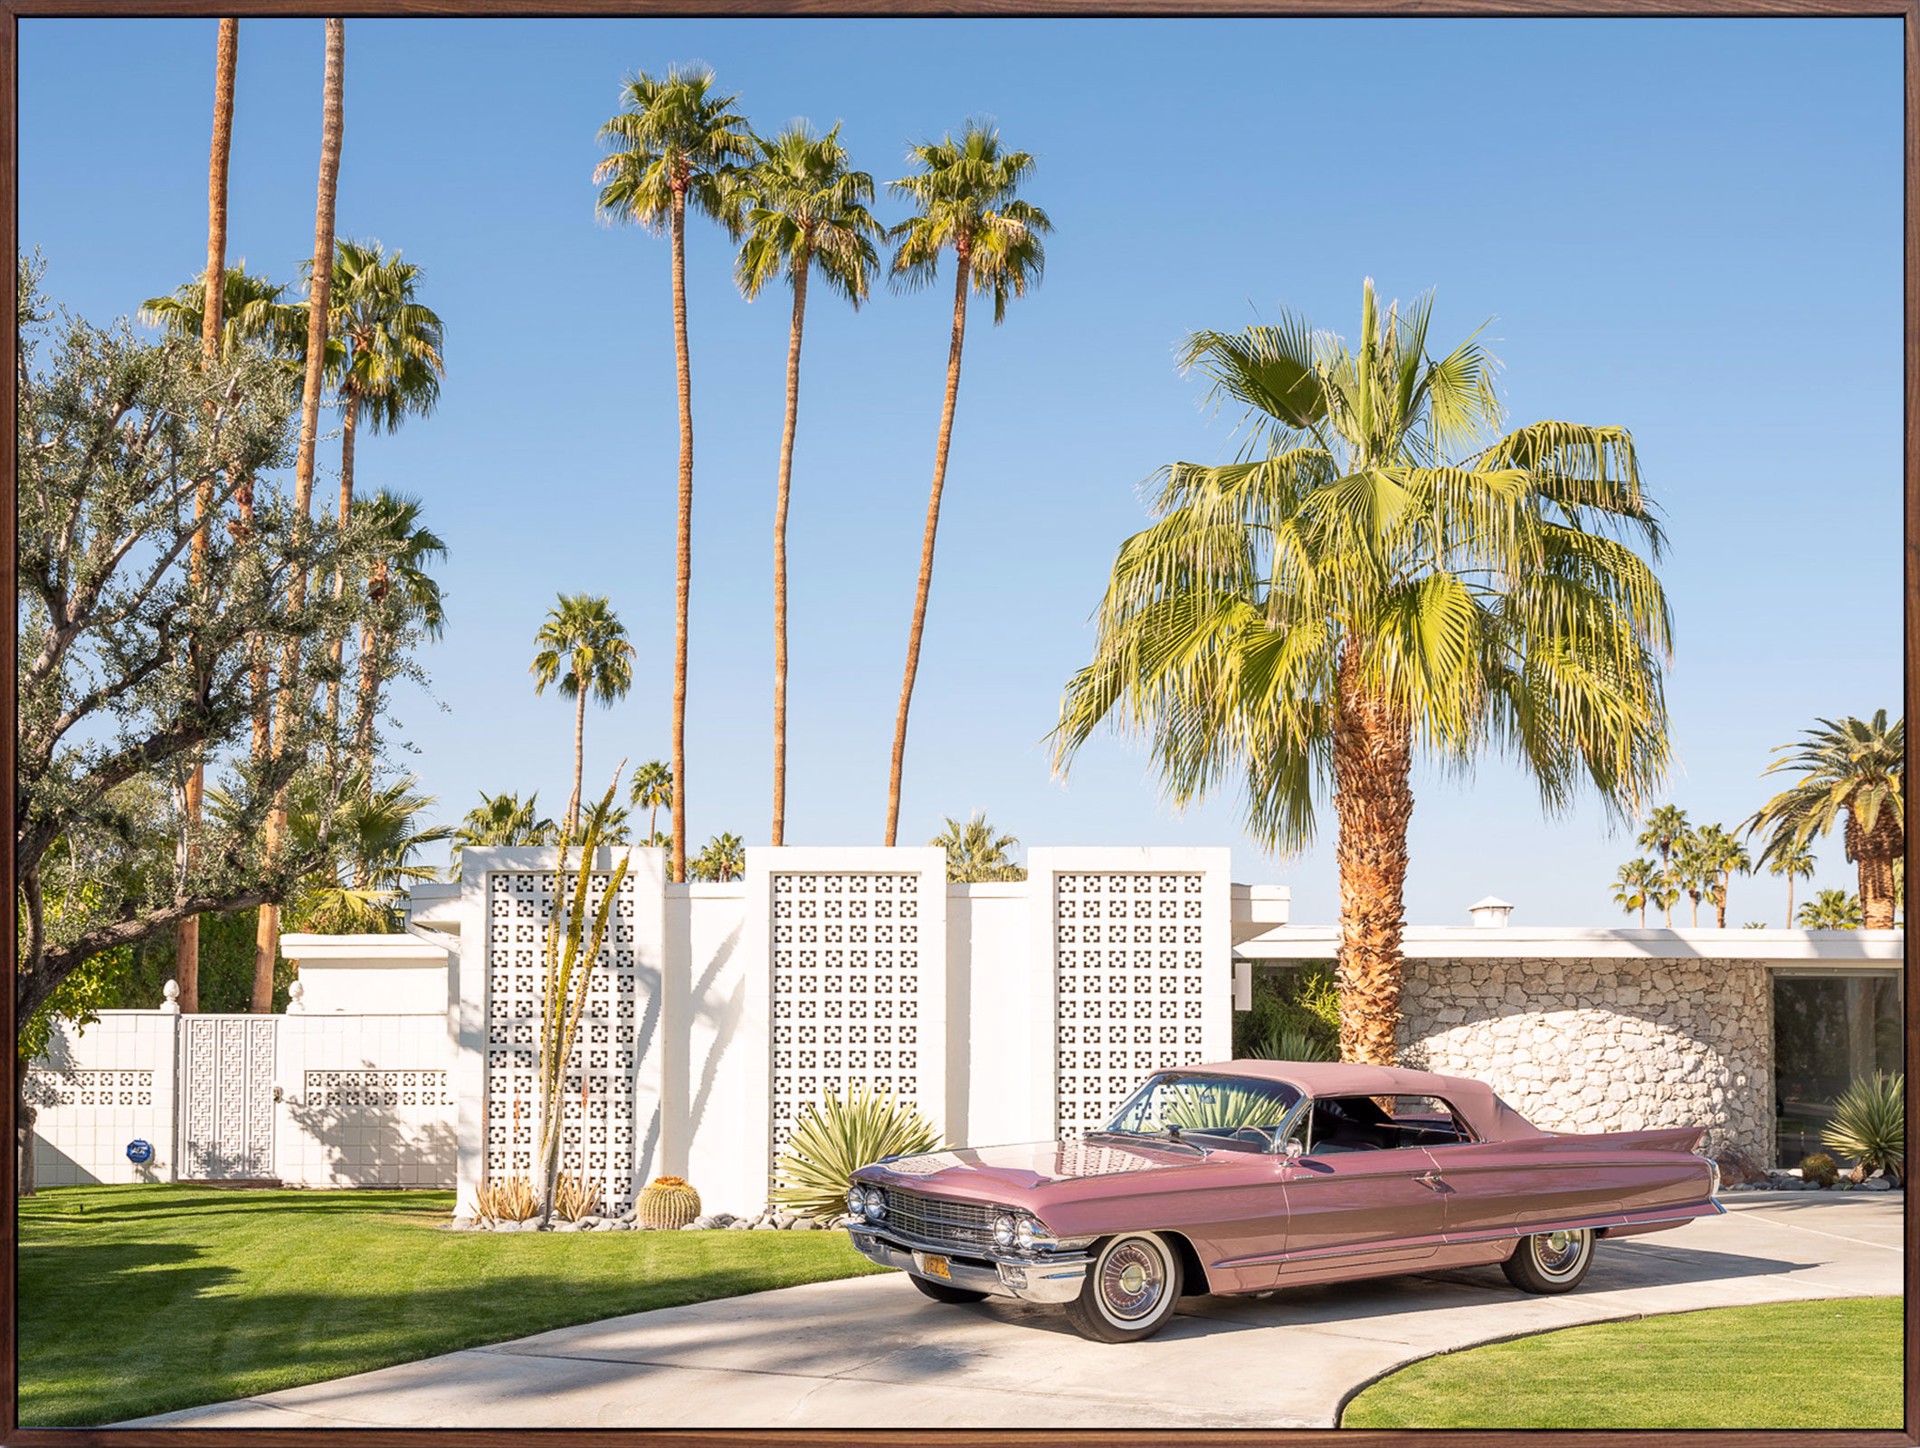 Cadillac Dreams by Patrick Lajoie